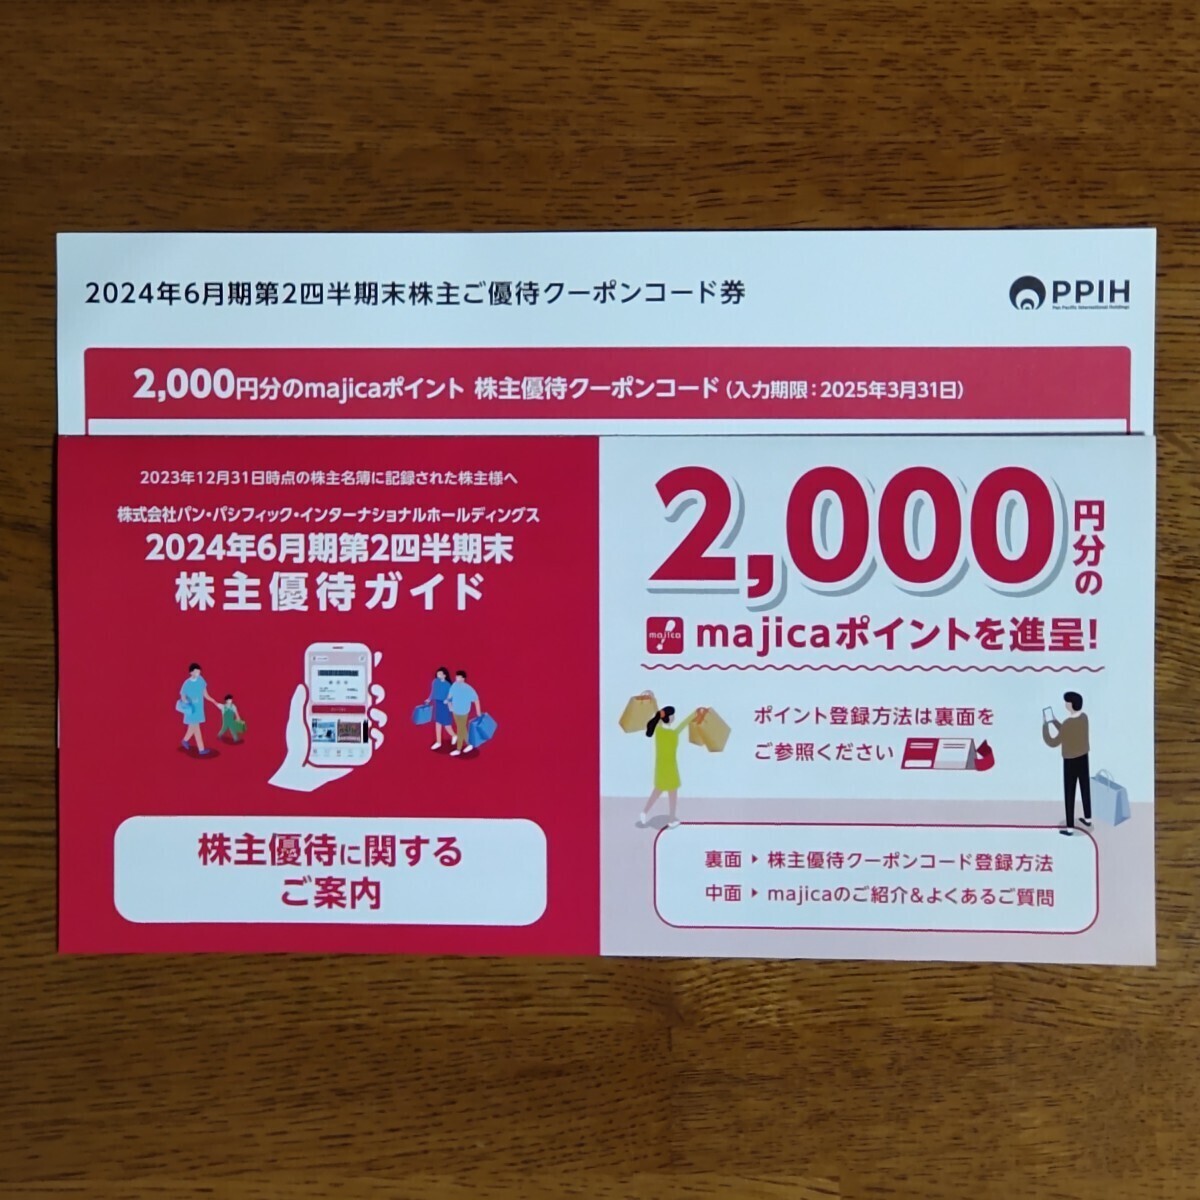 パン・パシフィック ドンキホーテ 株主優待 majicaポイント 2000円 コード通知_画像1